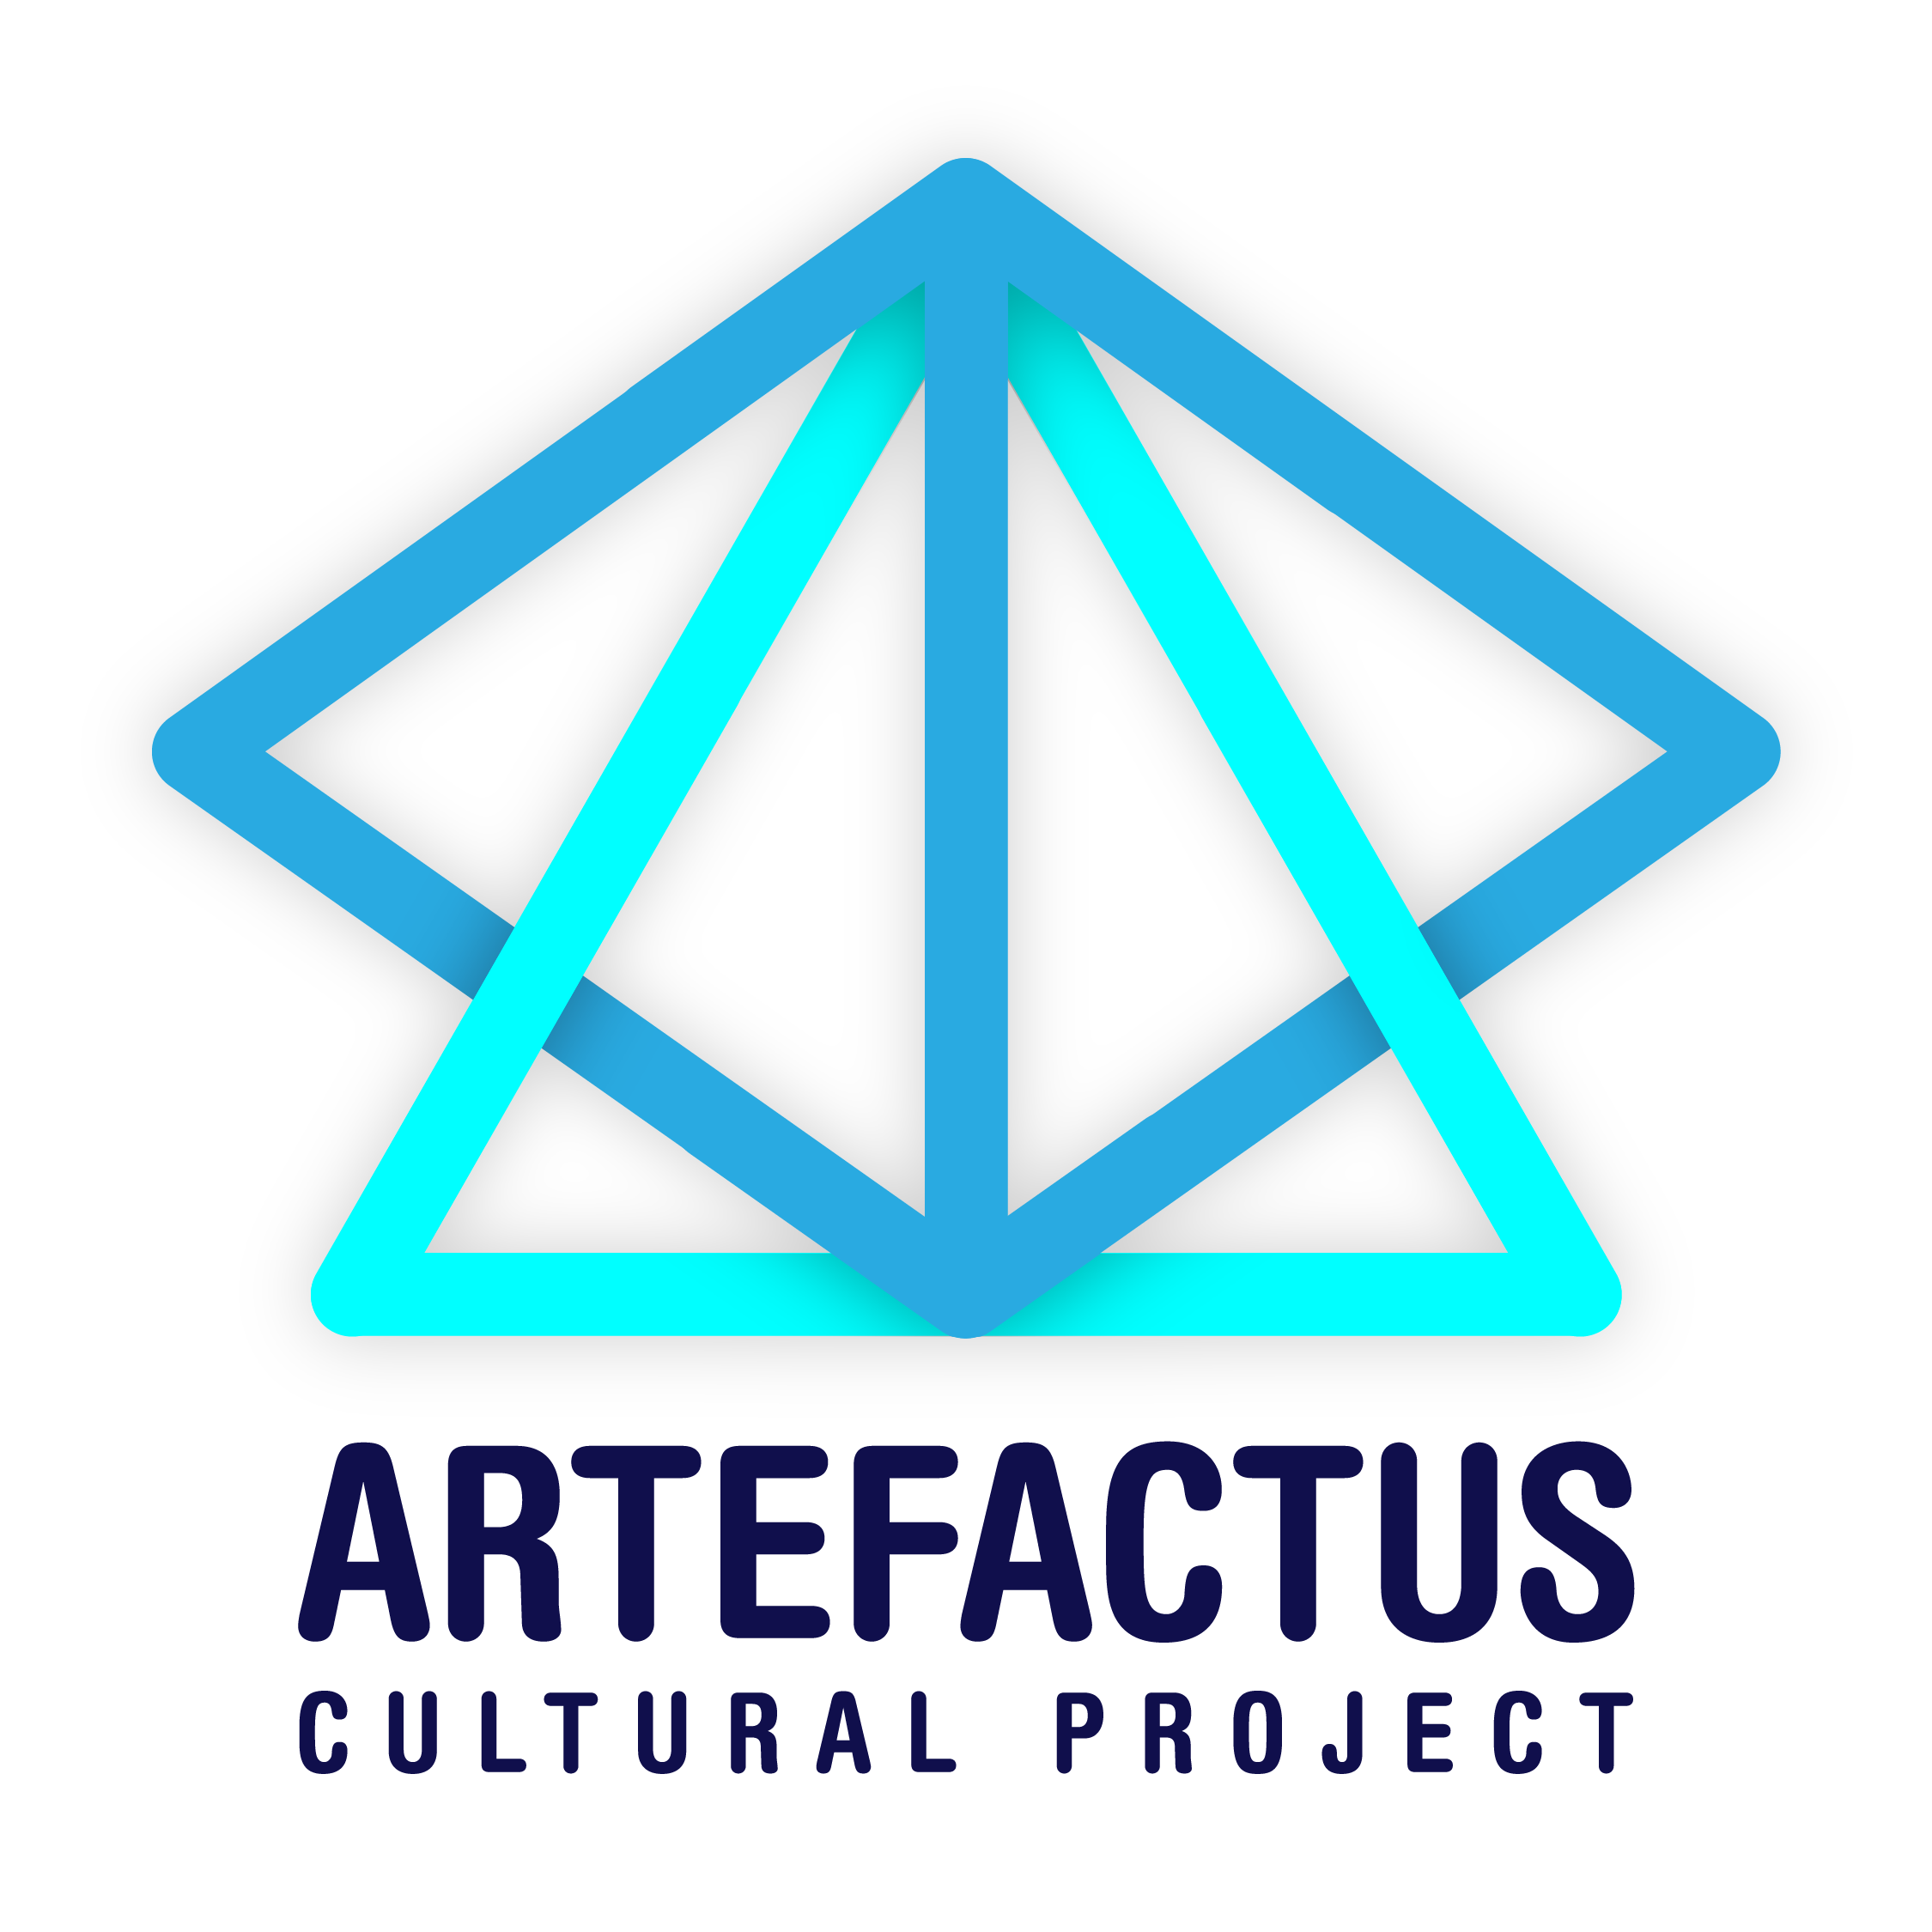 Artefactus Cultural Project